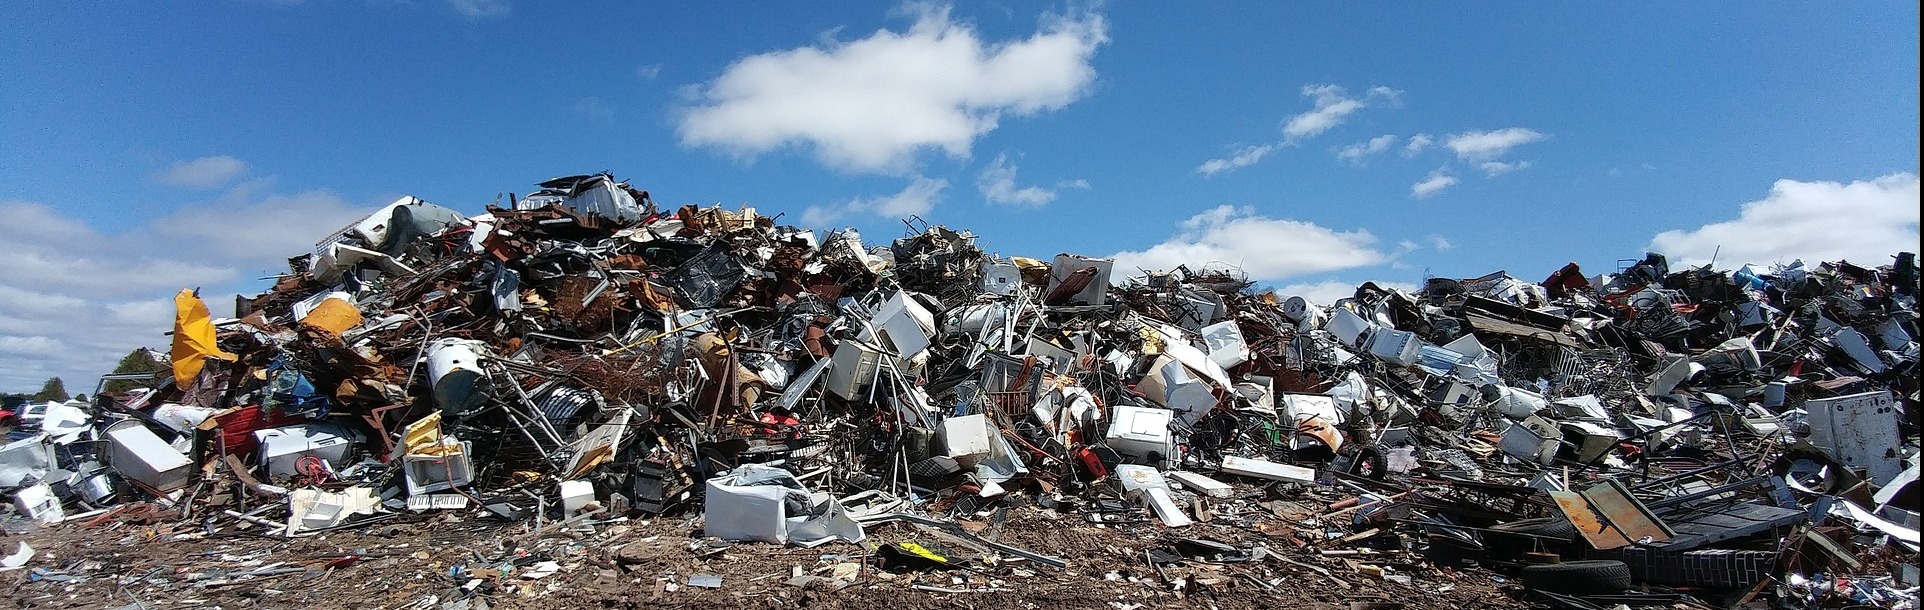 Landfill Garbage Pile